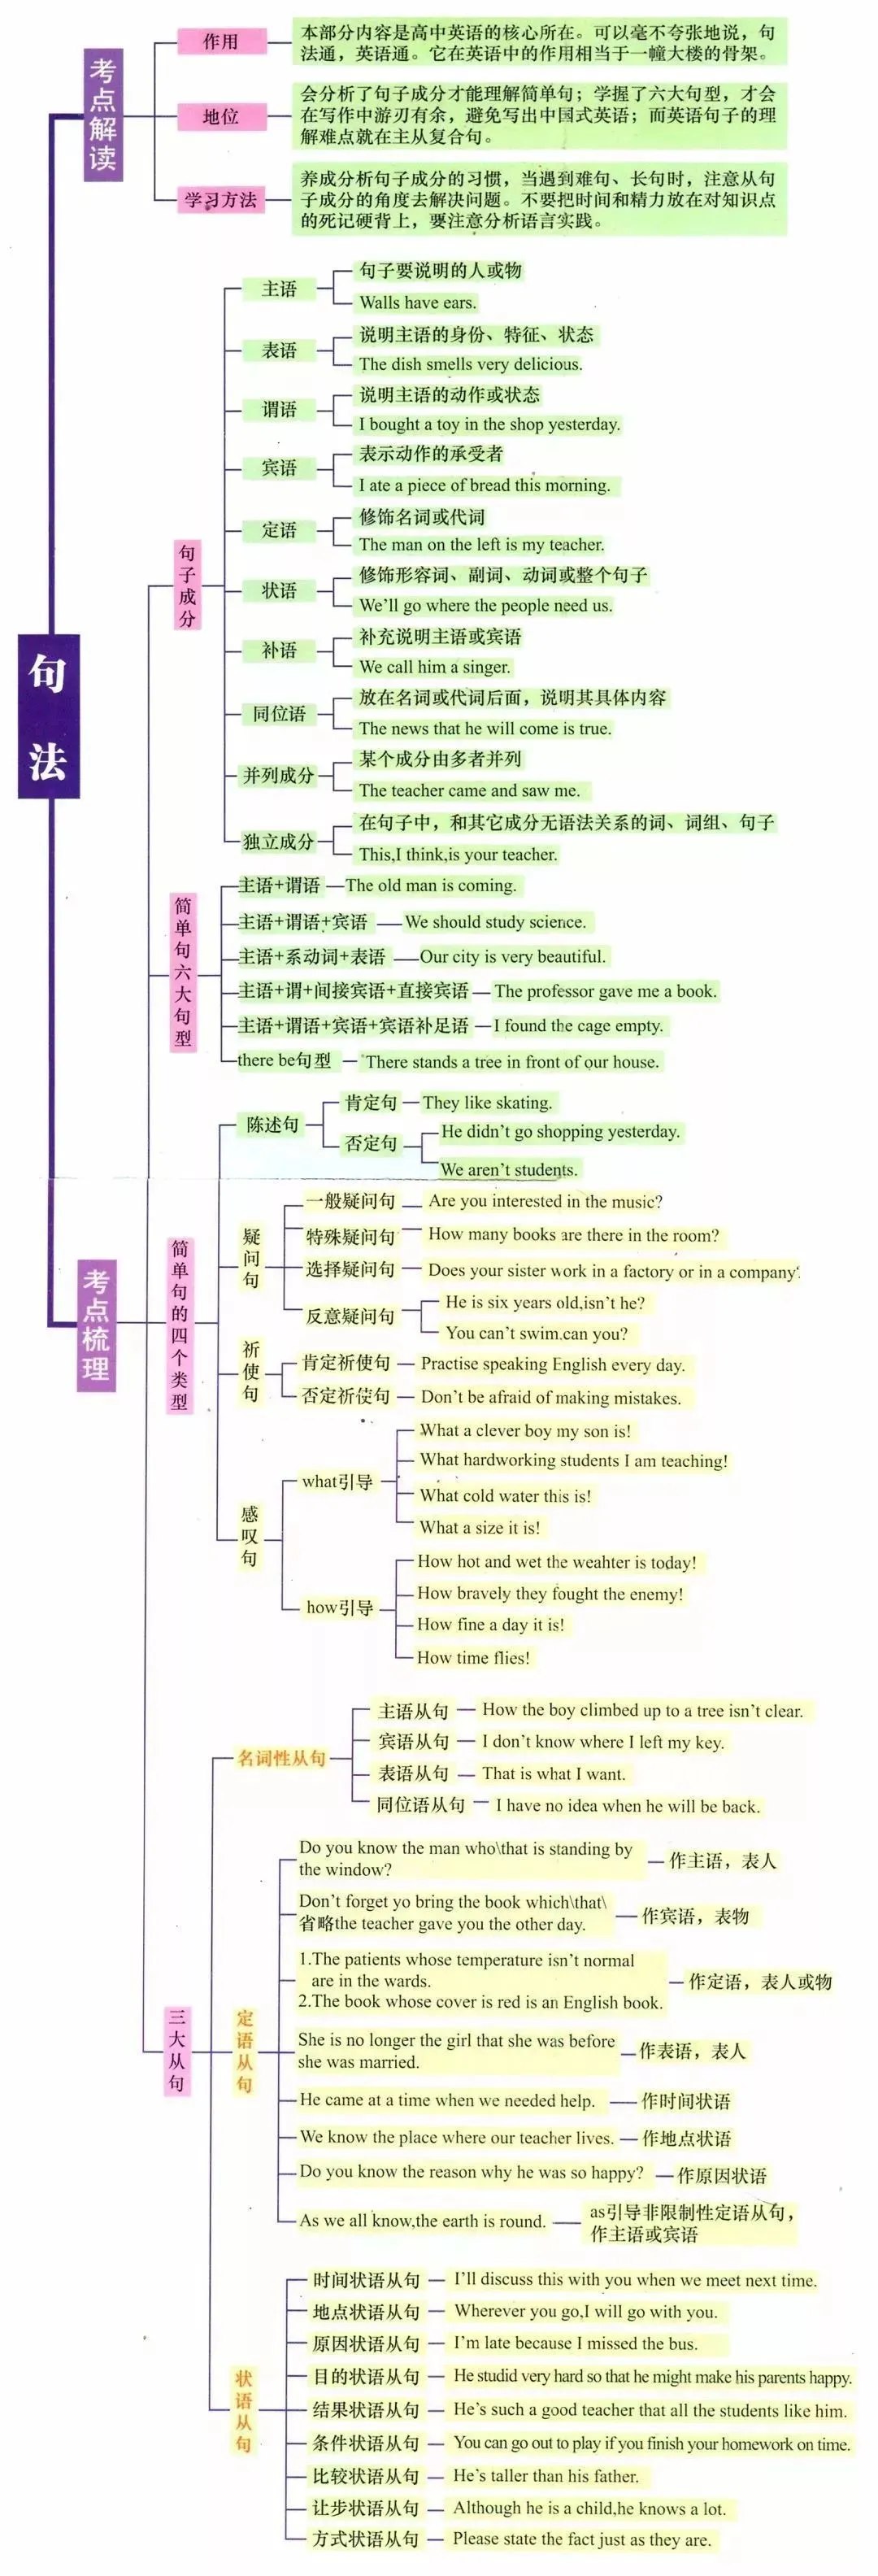 英语句法结构树形图